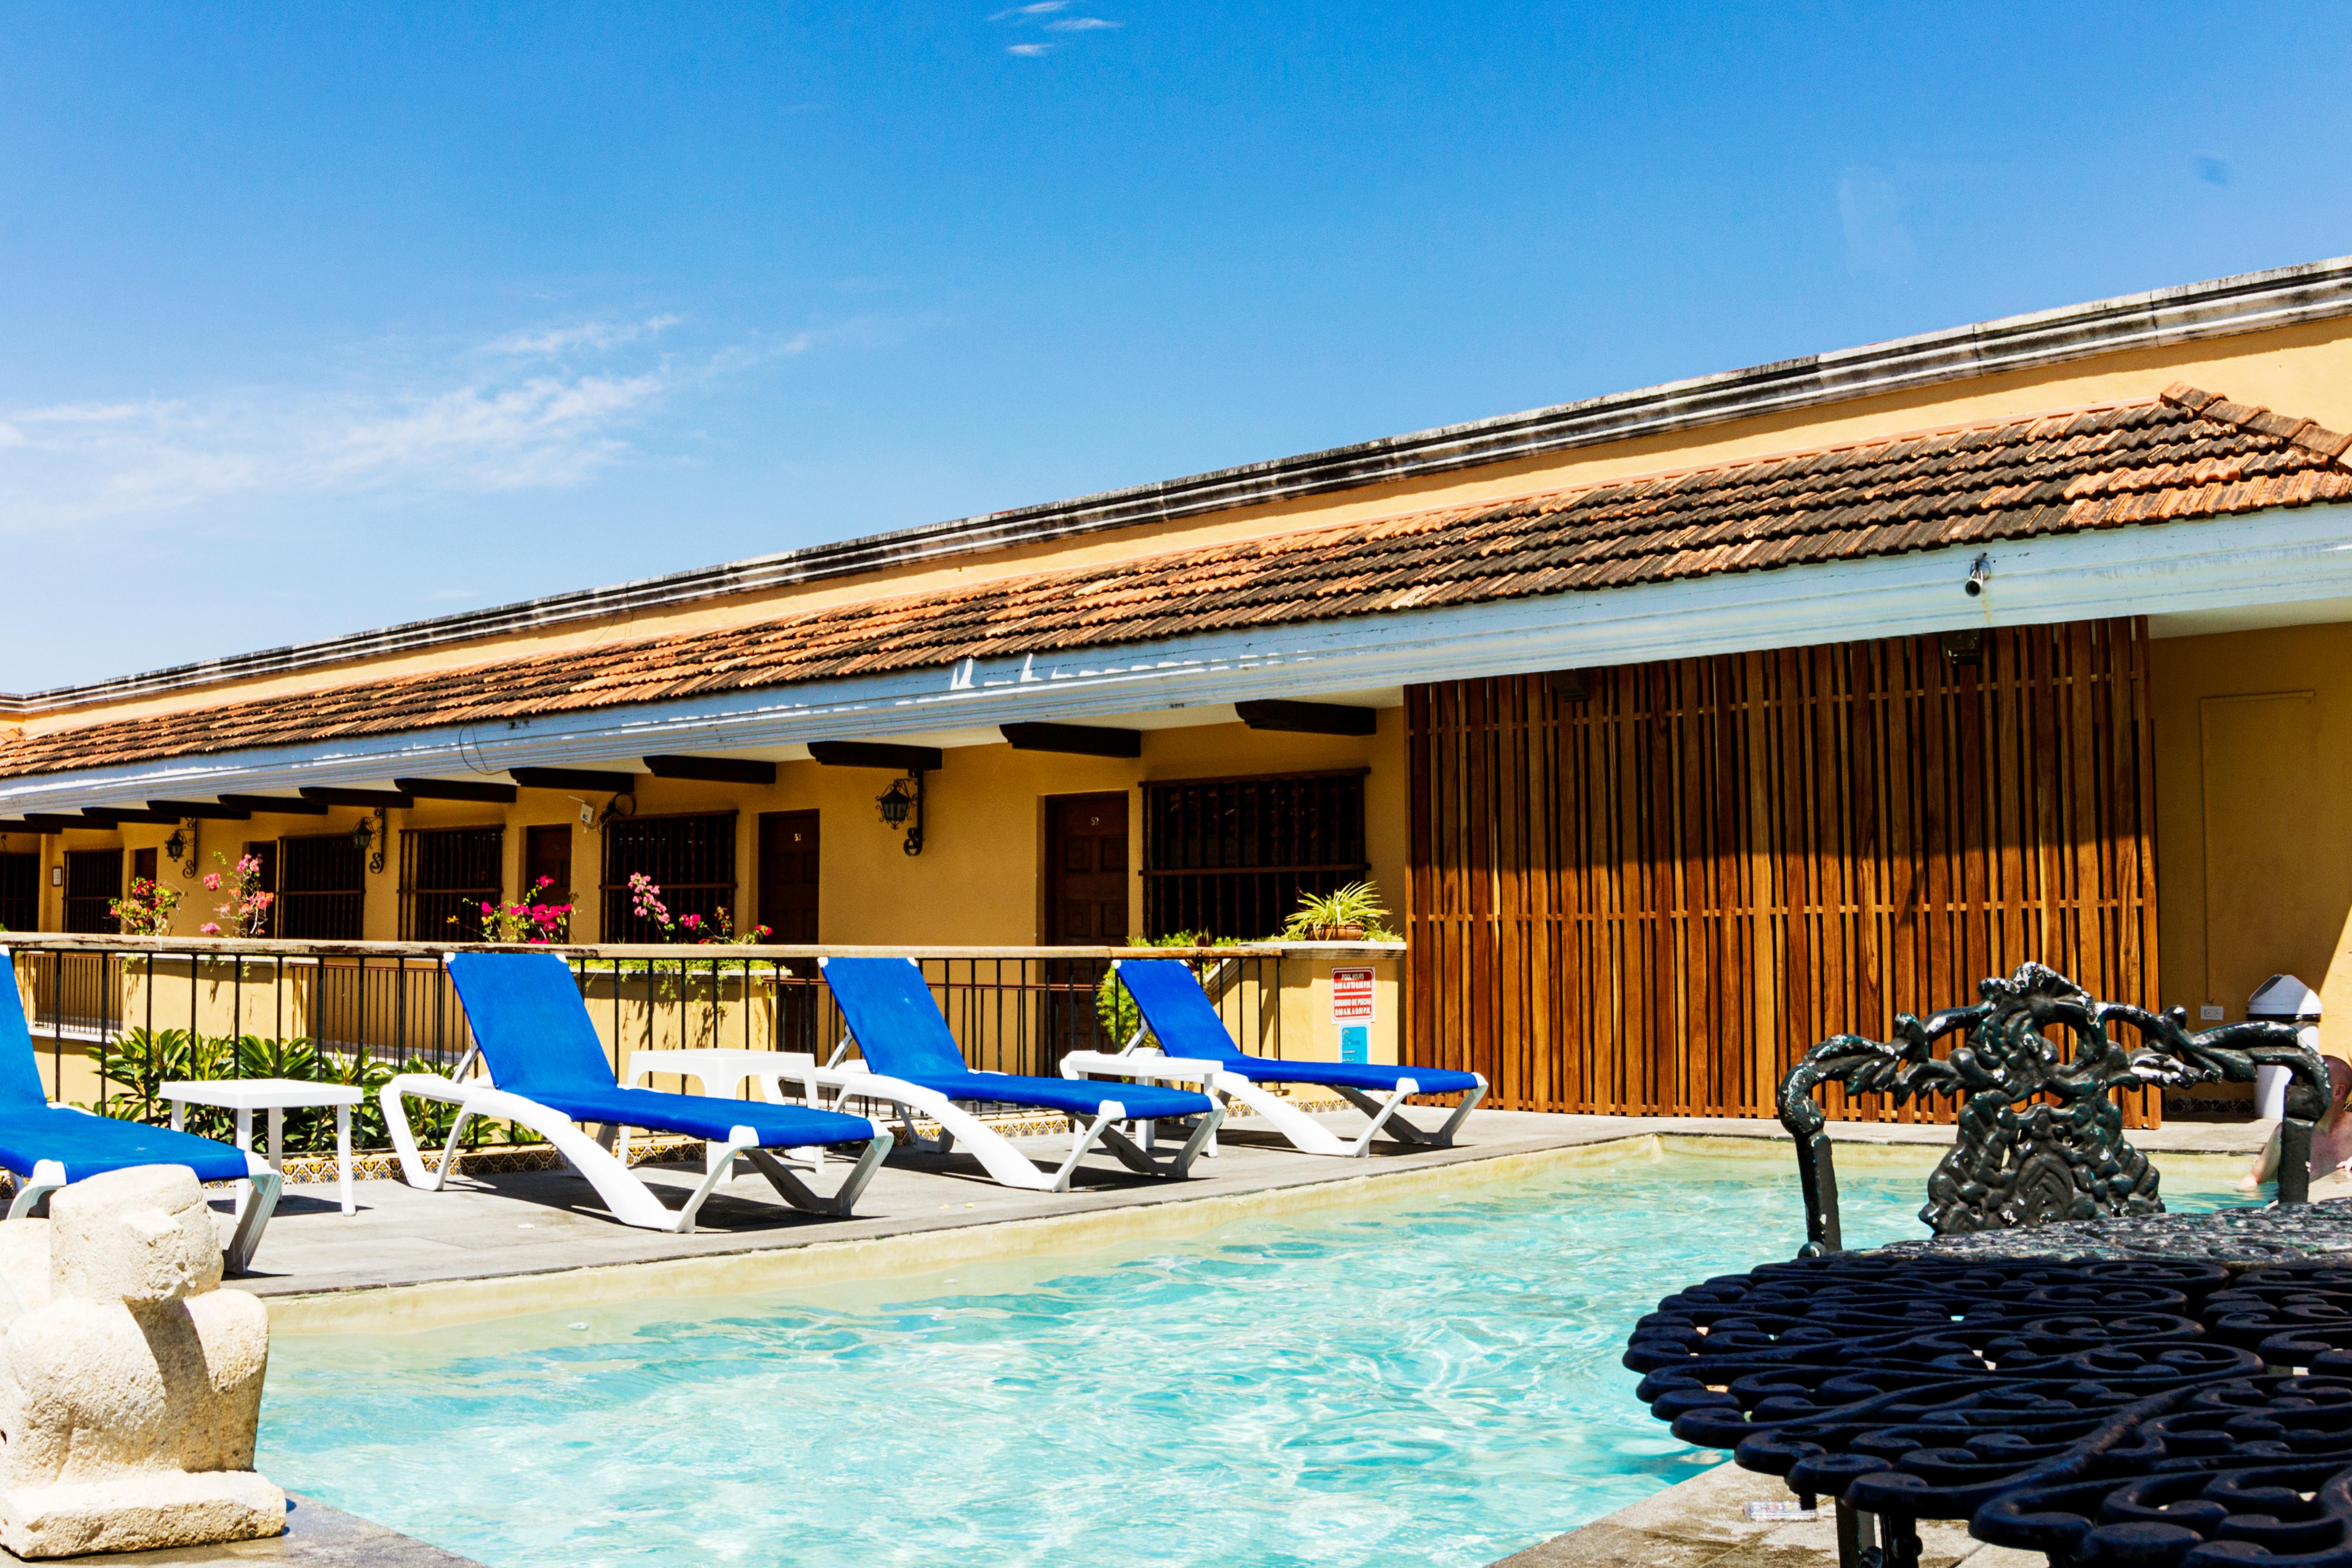 Hotel Caribe Merida Yucatan Bagian luar foto